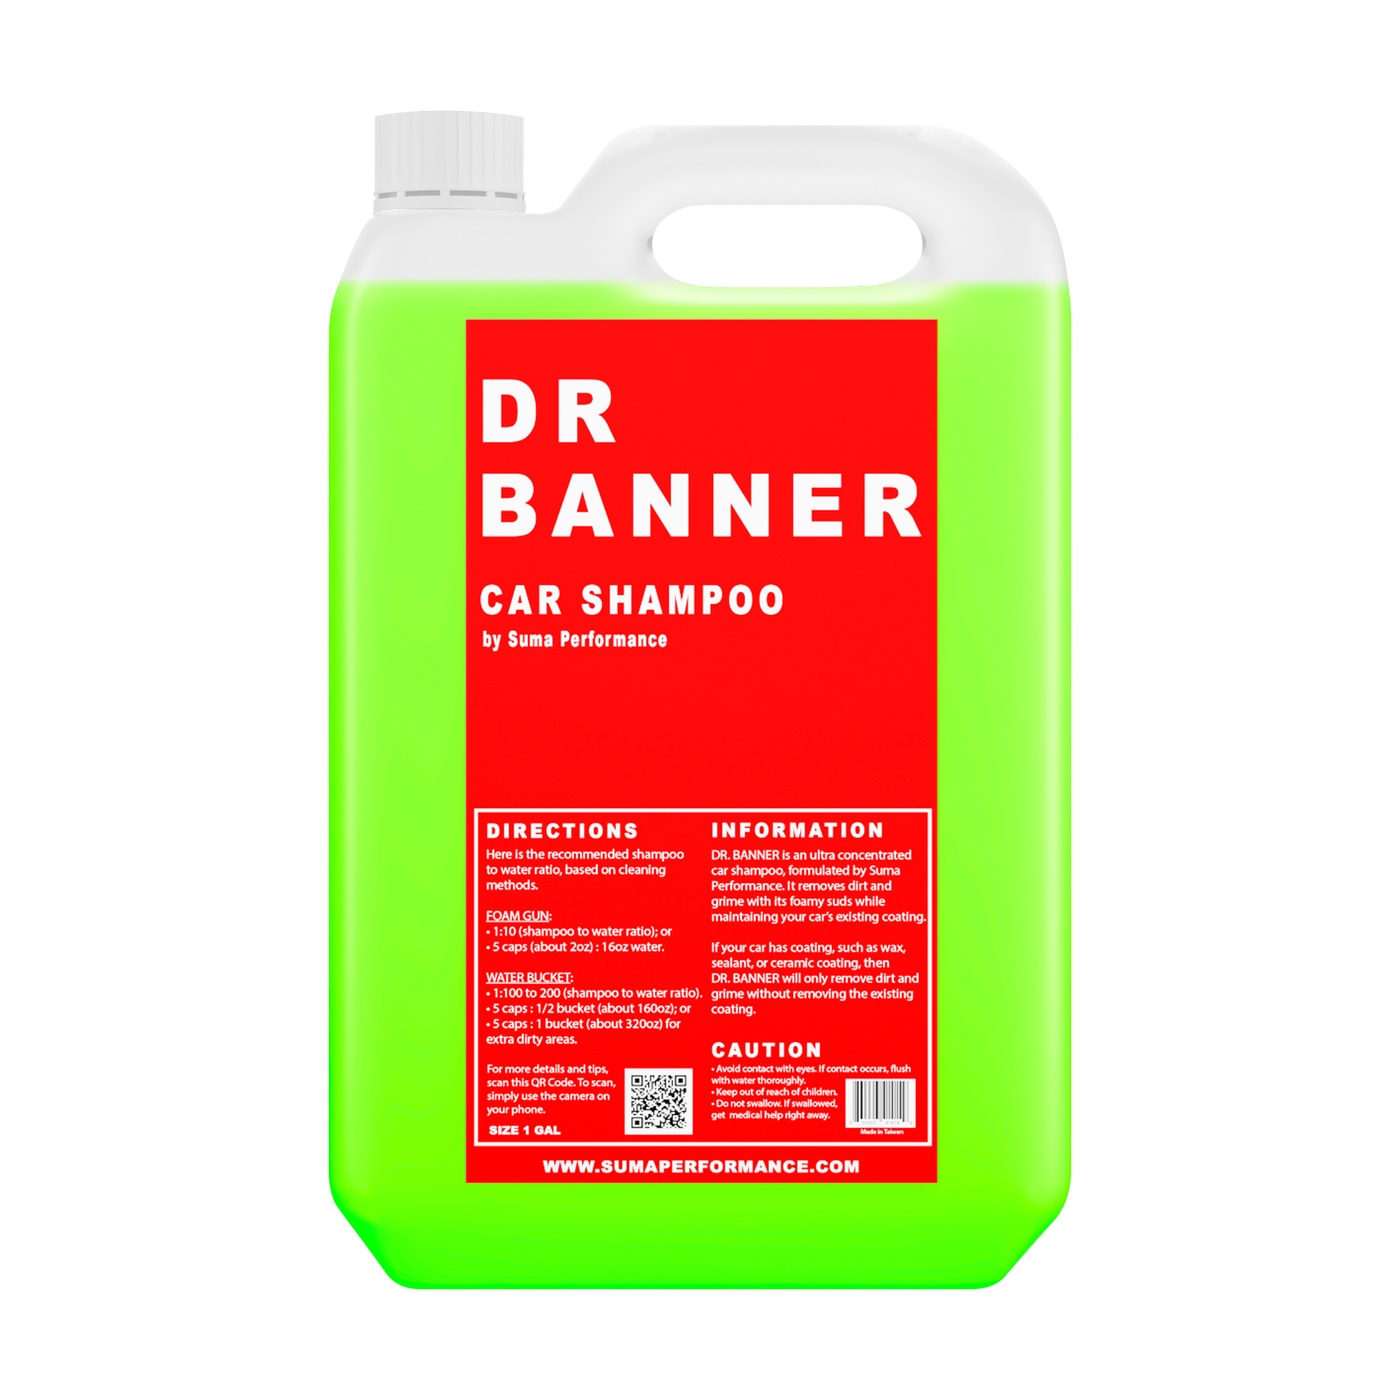 DR BANNER- Car Shampoo